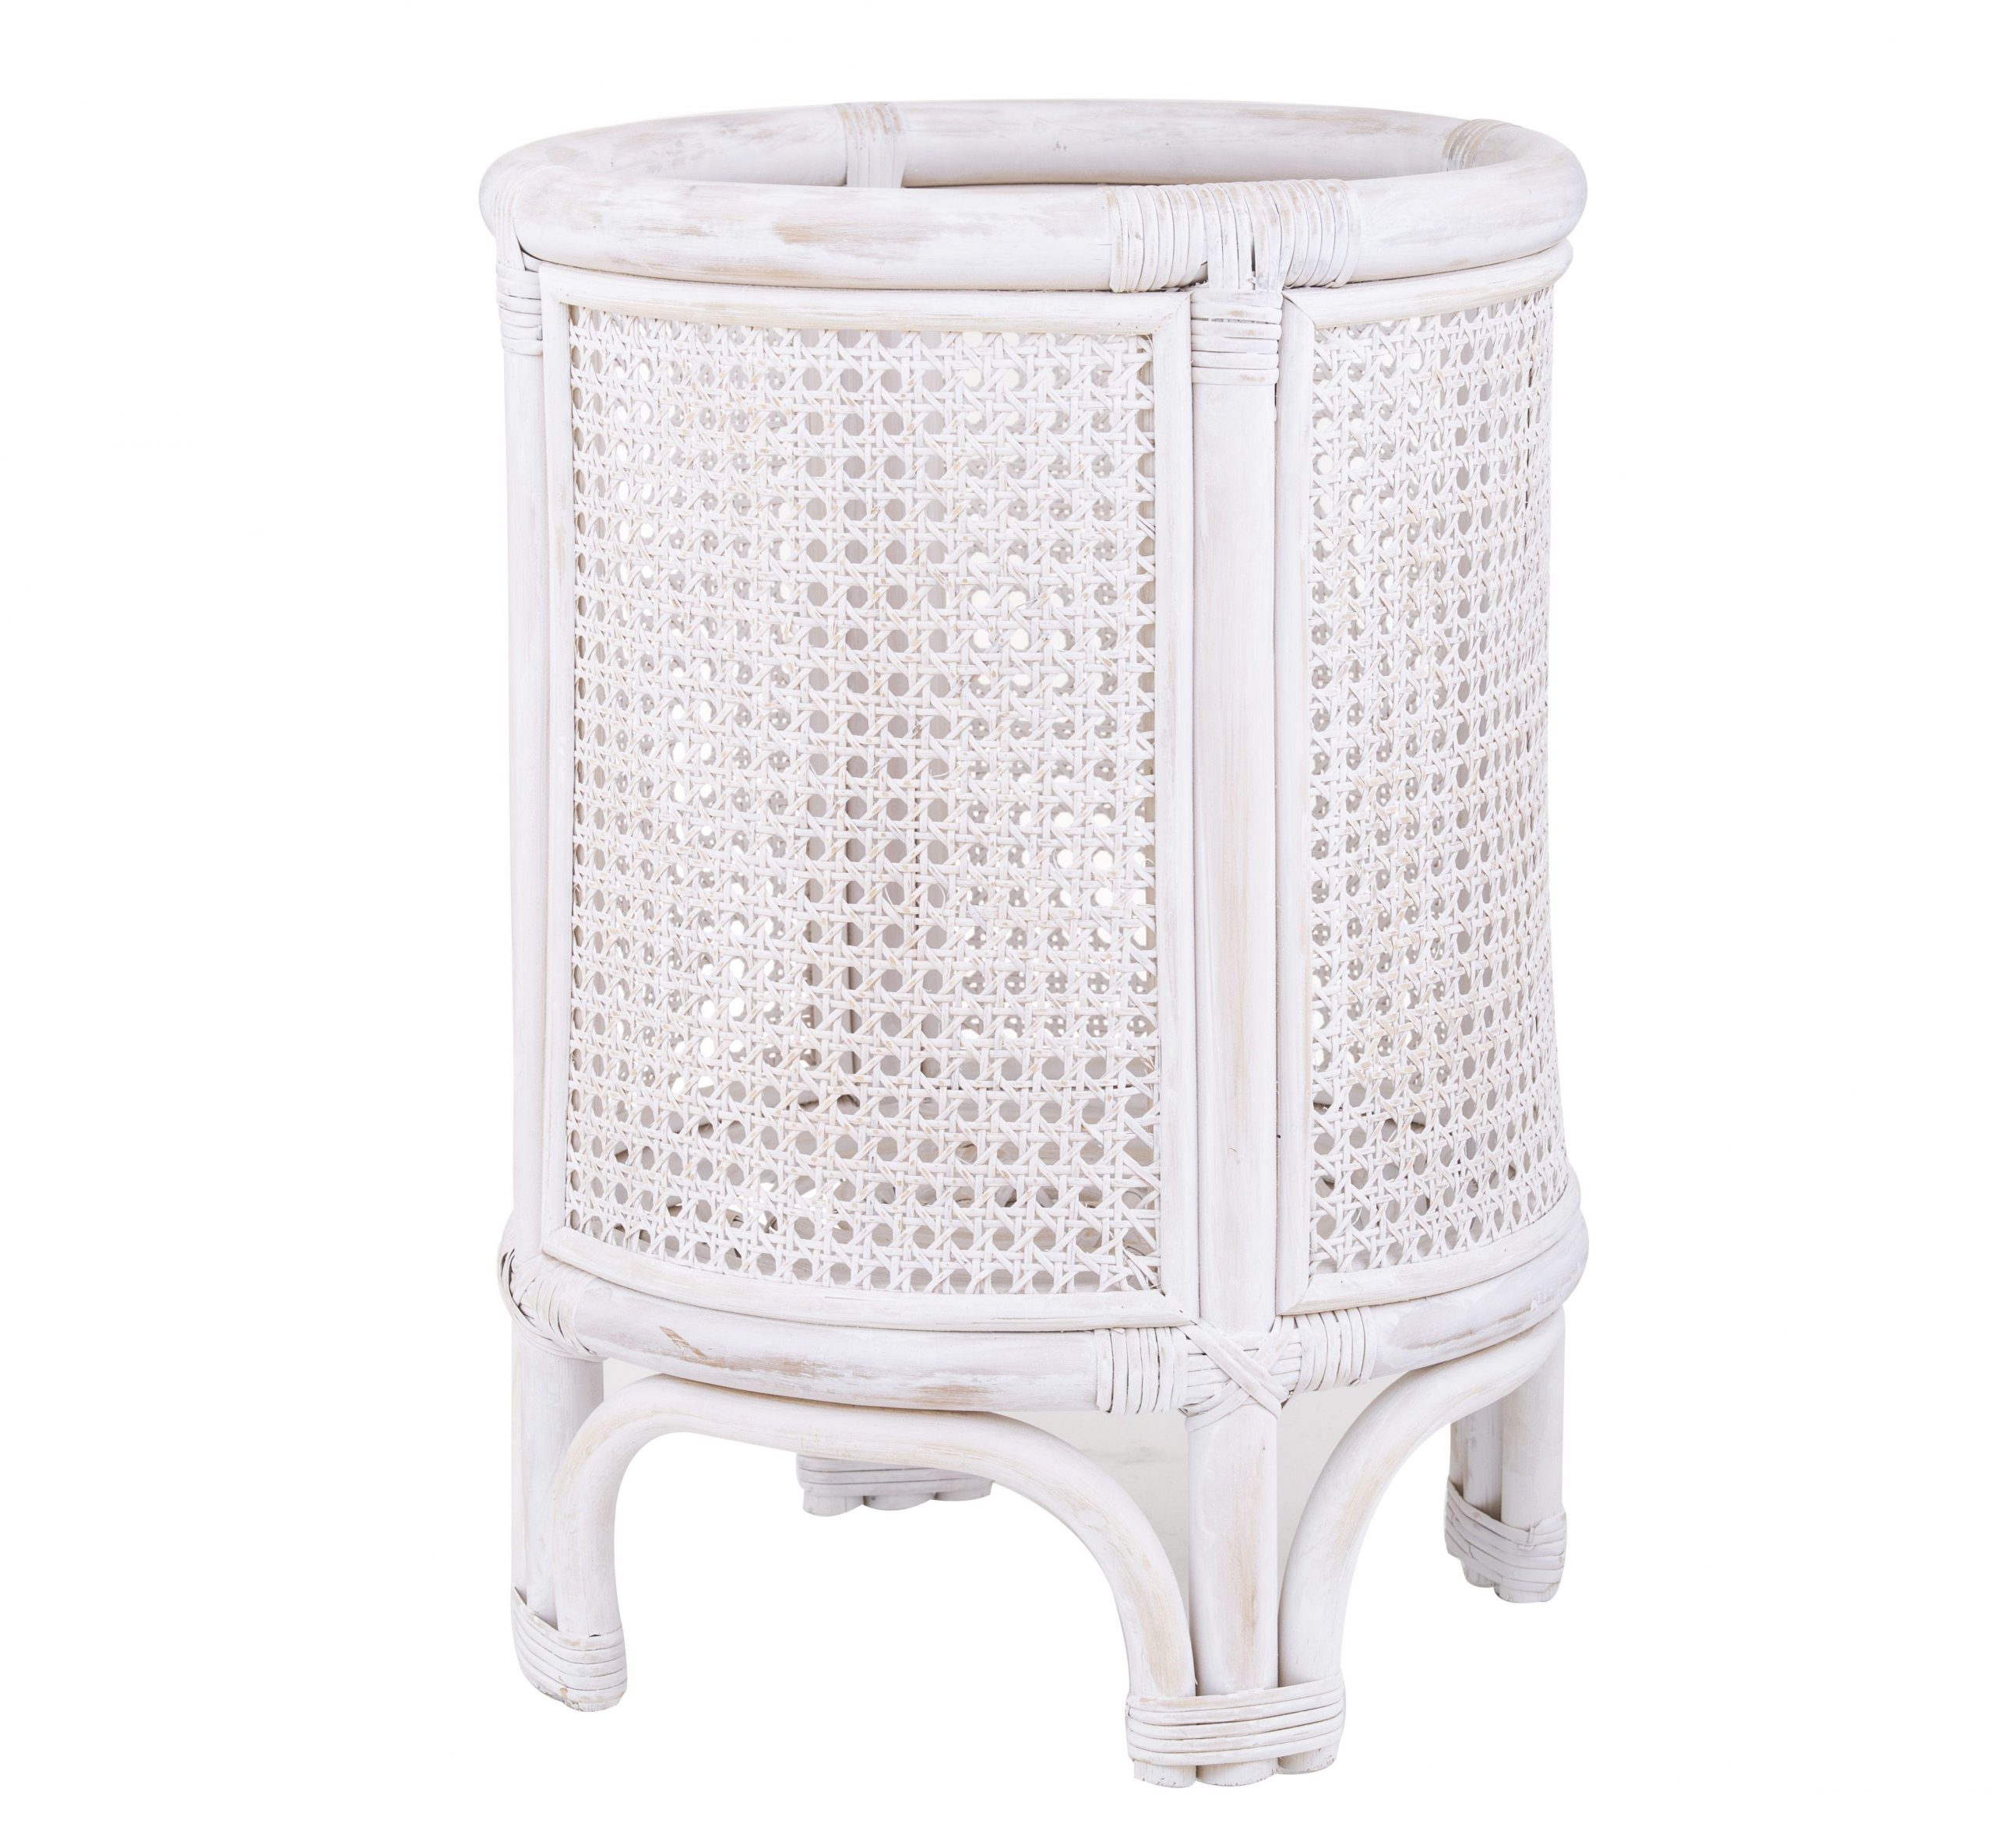 Basket Santai Planter Pot 360 x 500mm White Wash